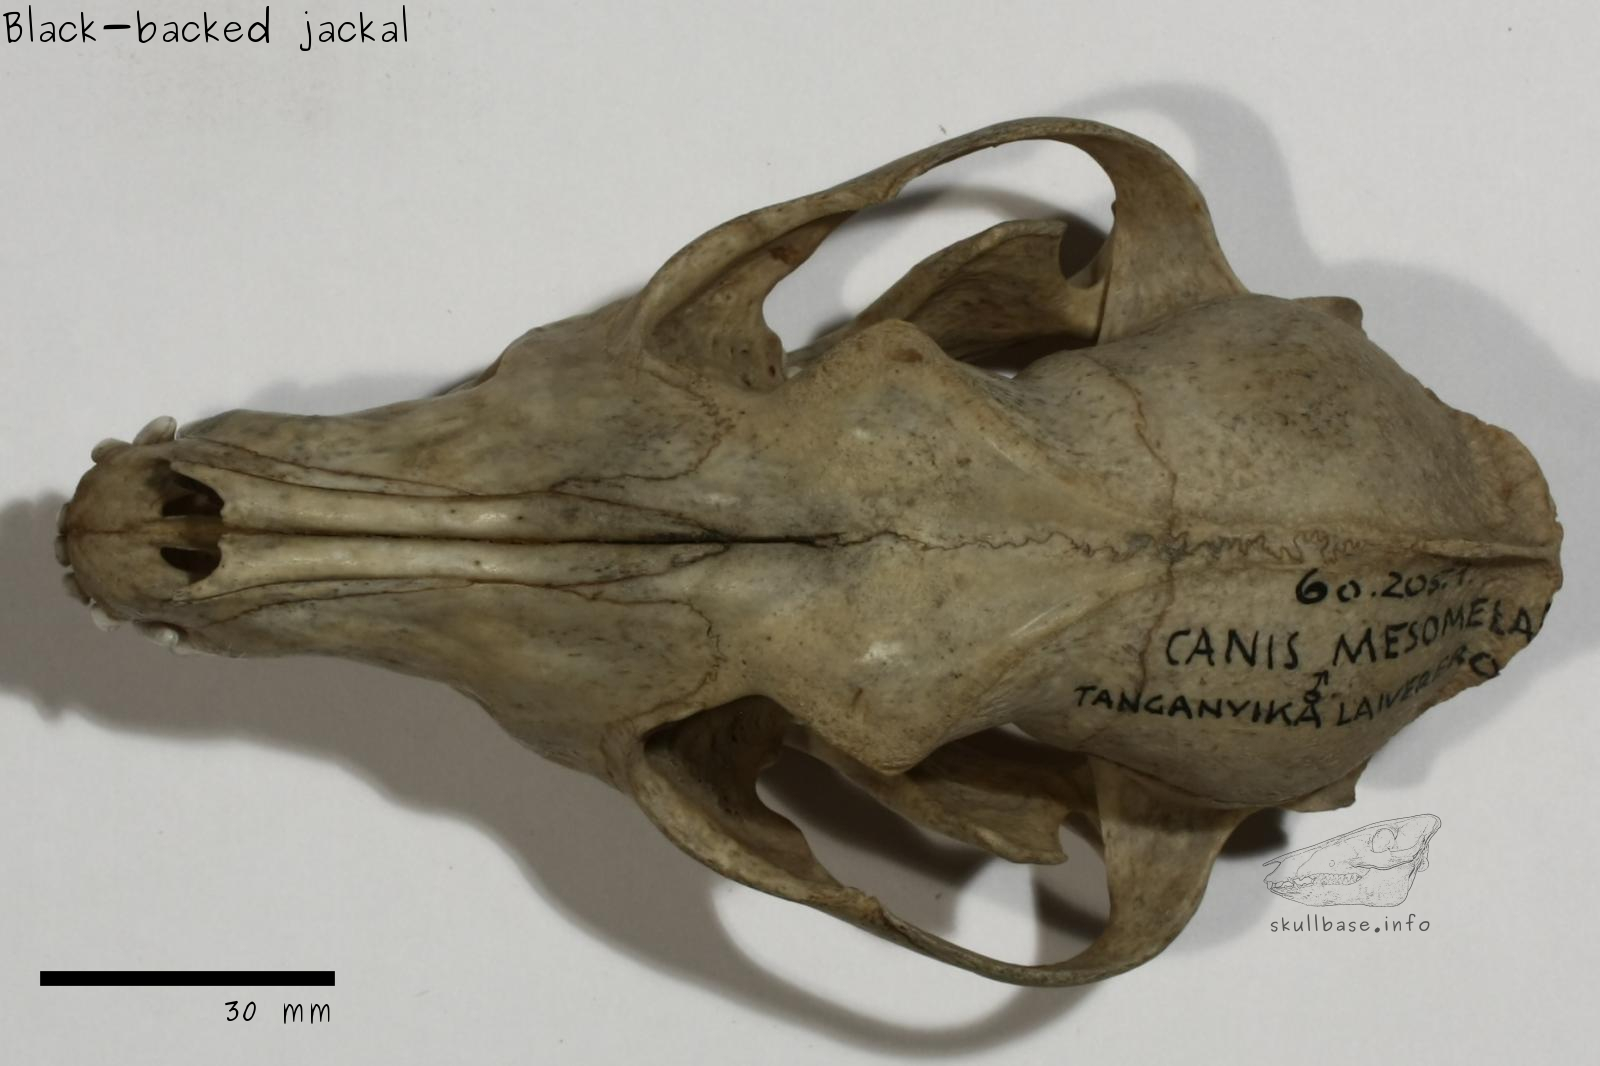 Black-backed jackal (Canis mesomelas) skull dorsal view